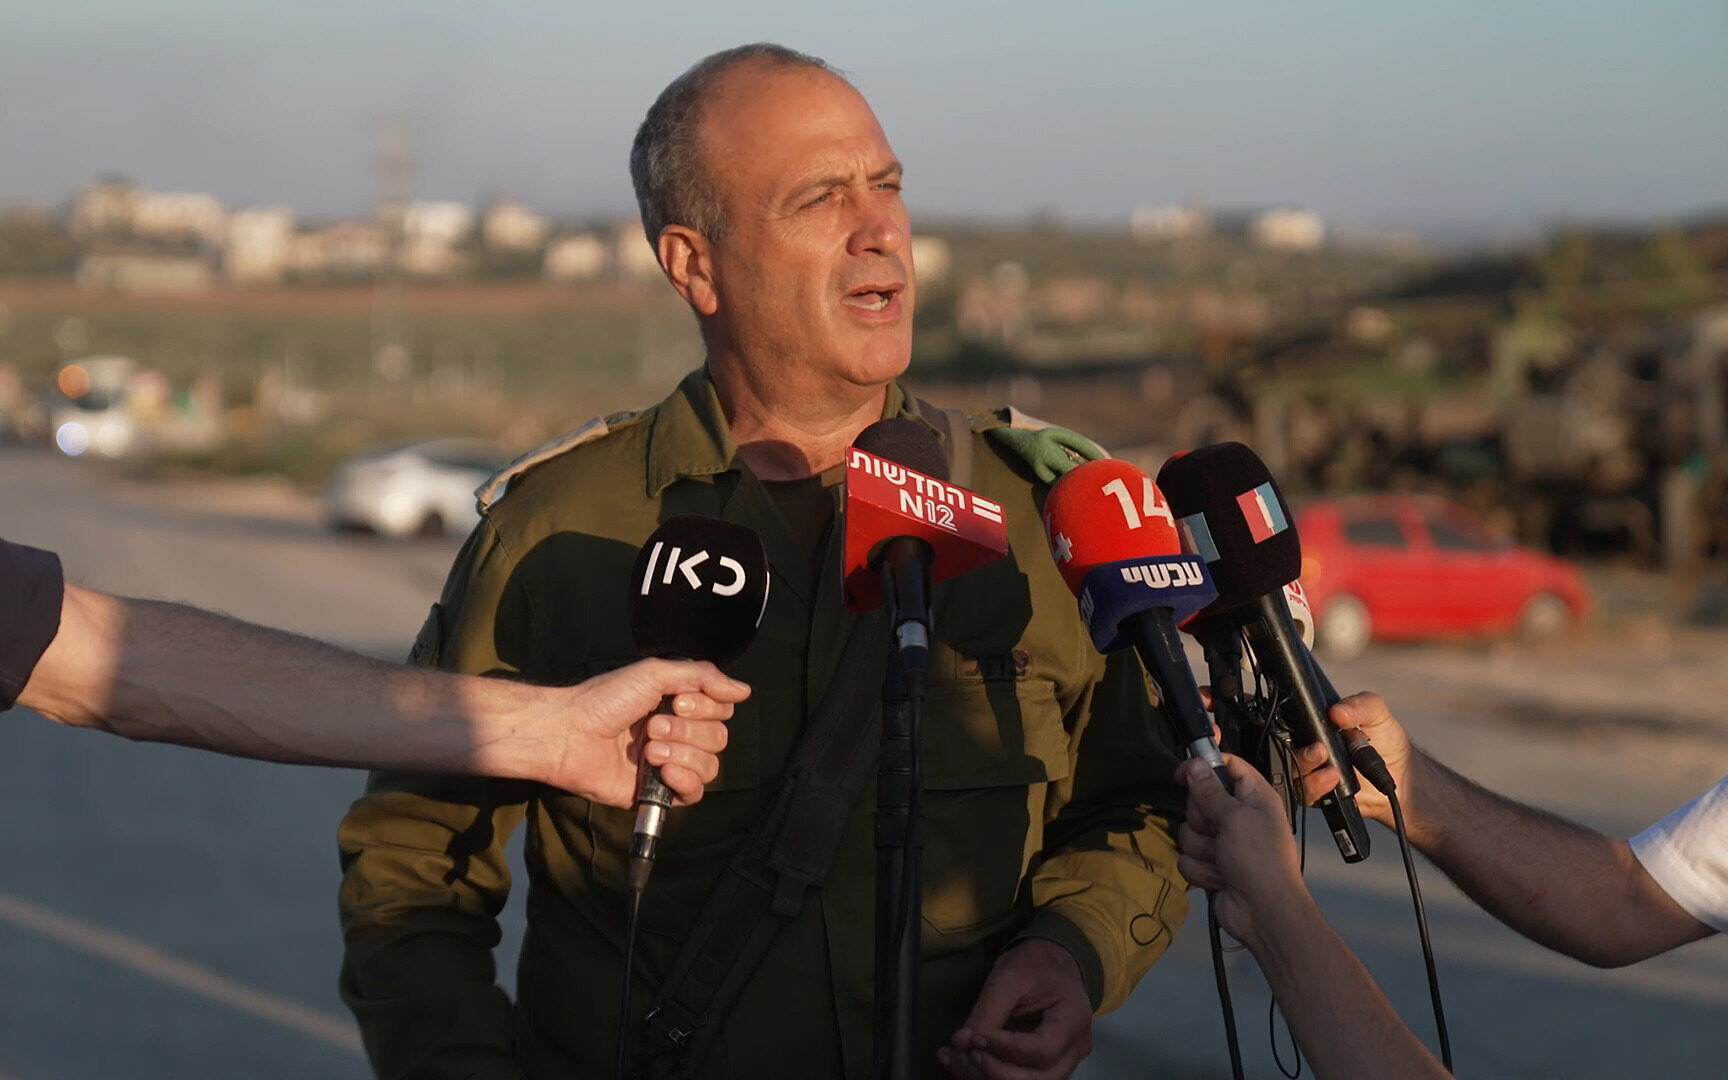 İsrail ordusunda üst düzey ikinci istifa kararı geldi